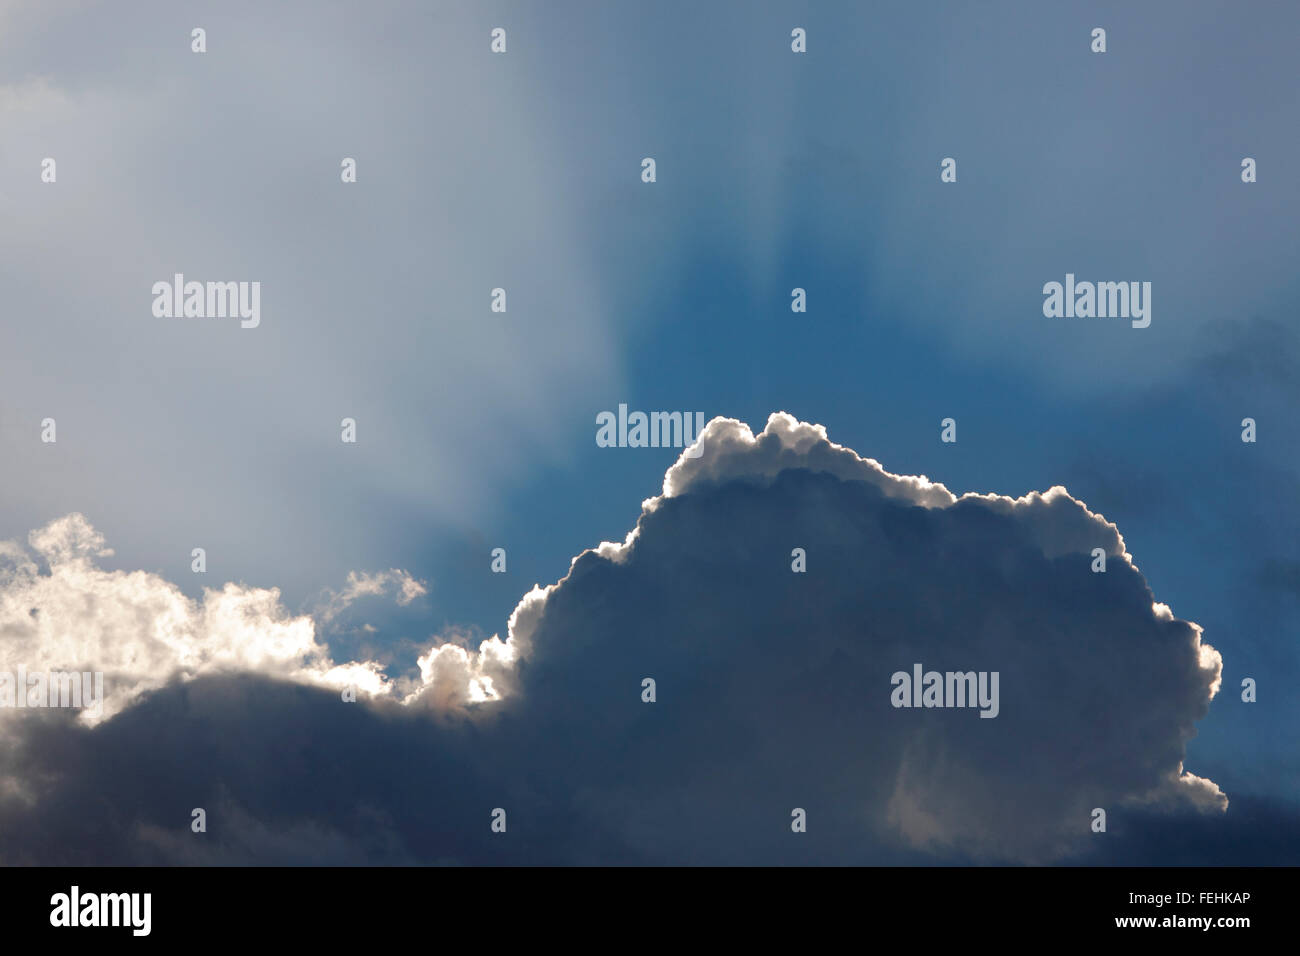 El sol detrás de una nube Foto de stock